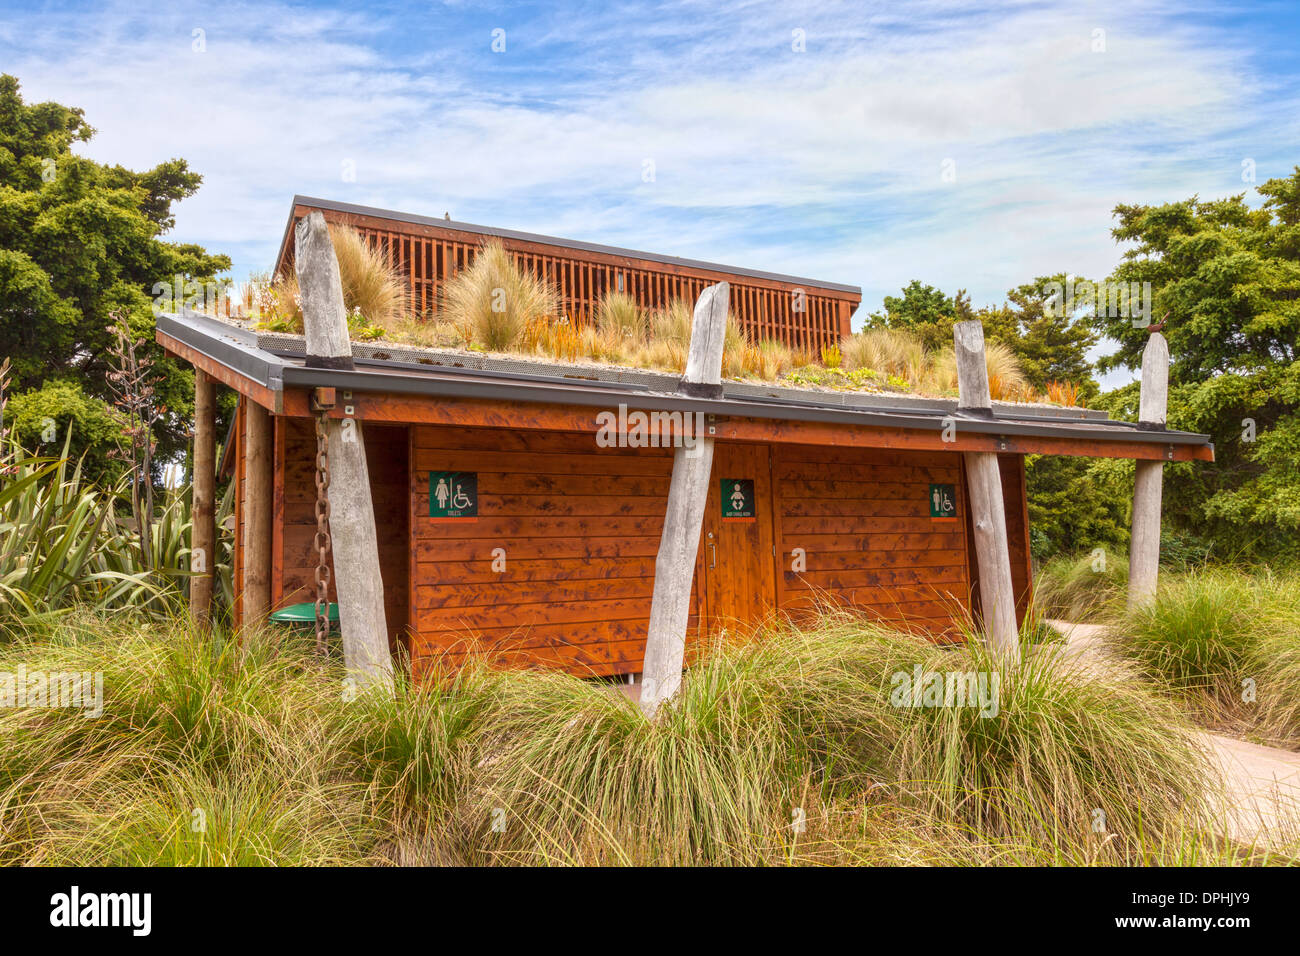 Bloc sanitaire avec toit végétal, Auckland Botanic Gardens. Le toit végétal absorbe l'eau de pluie, tout... Banque D'Images